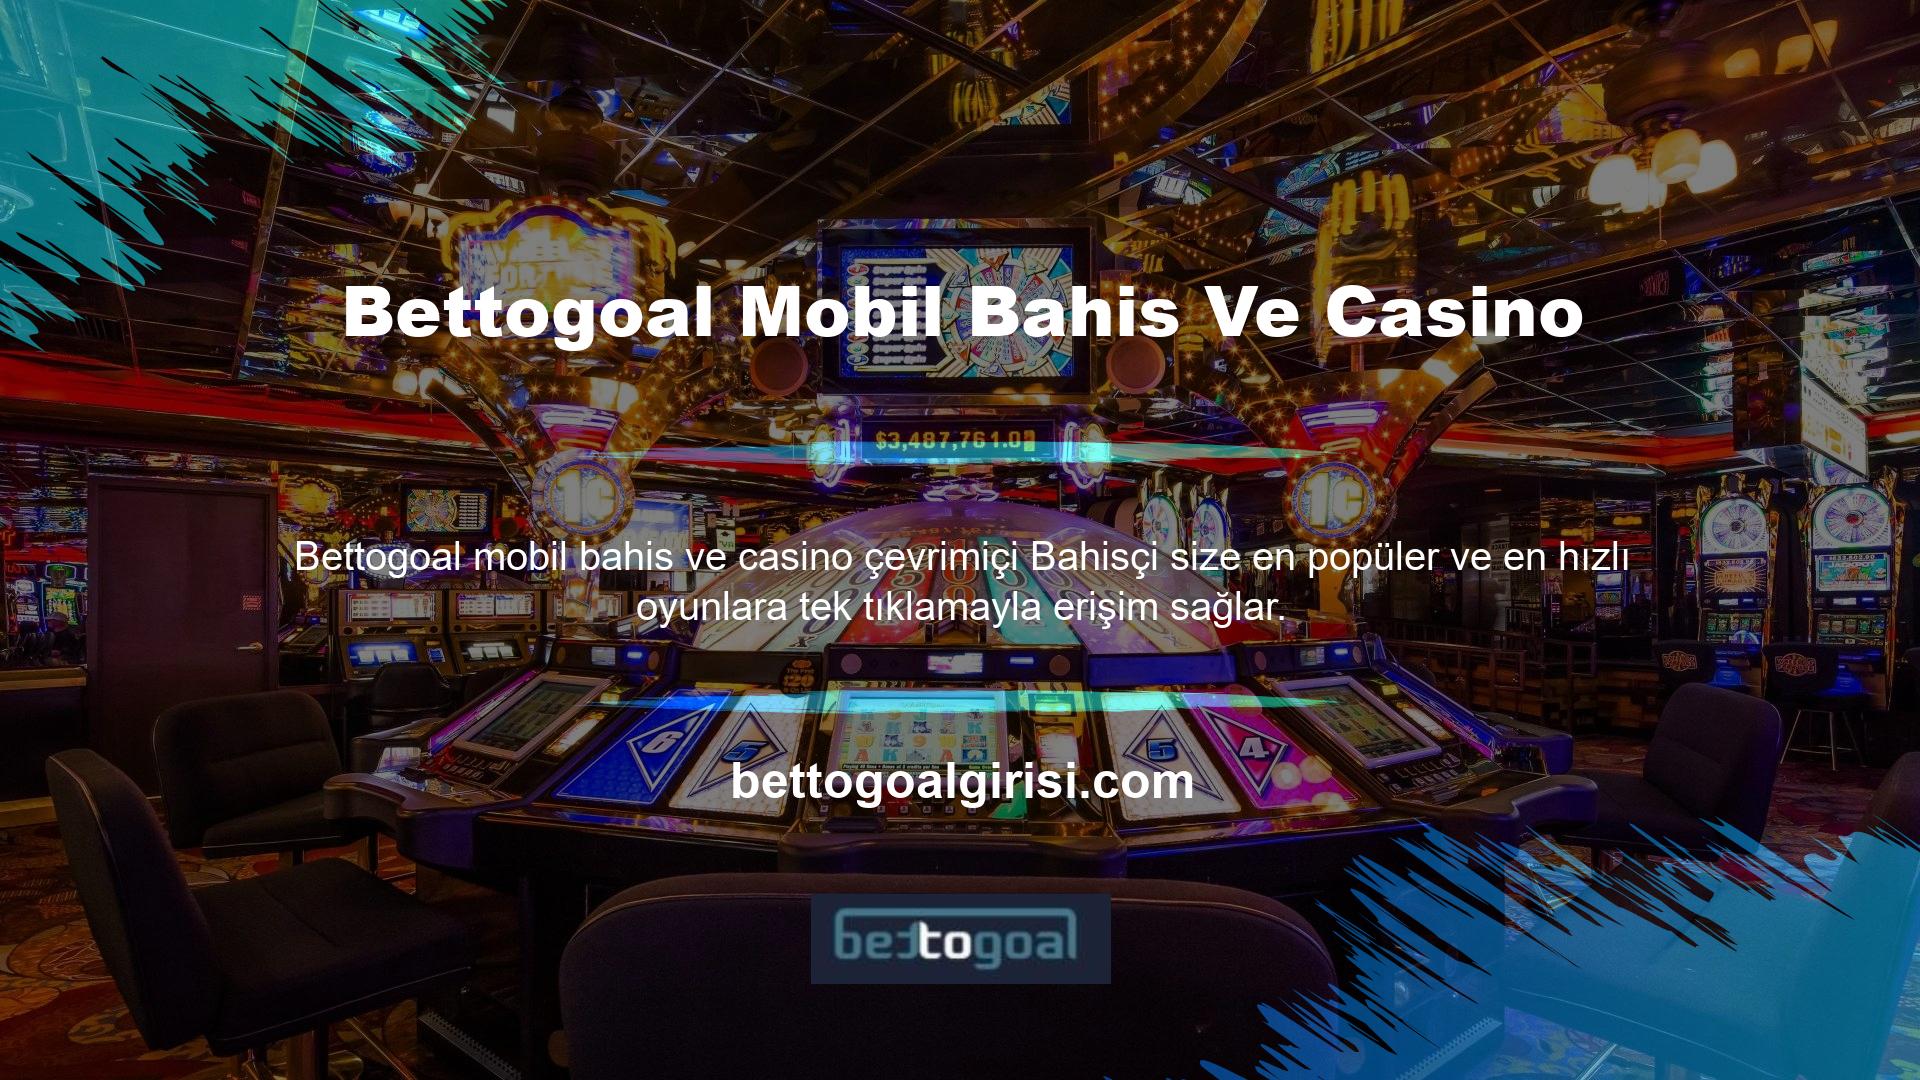 iOS ve Android bahis desteği sunan bu mobil platform, spor bahis oyunlarından casino oyunlarına kadar çok çeşitli oyunları cebinize getiriyor